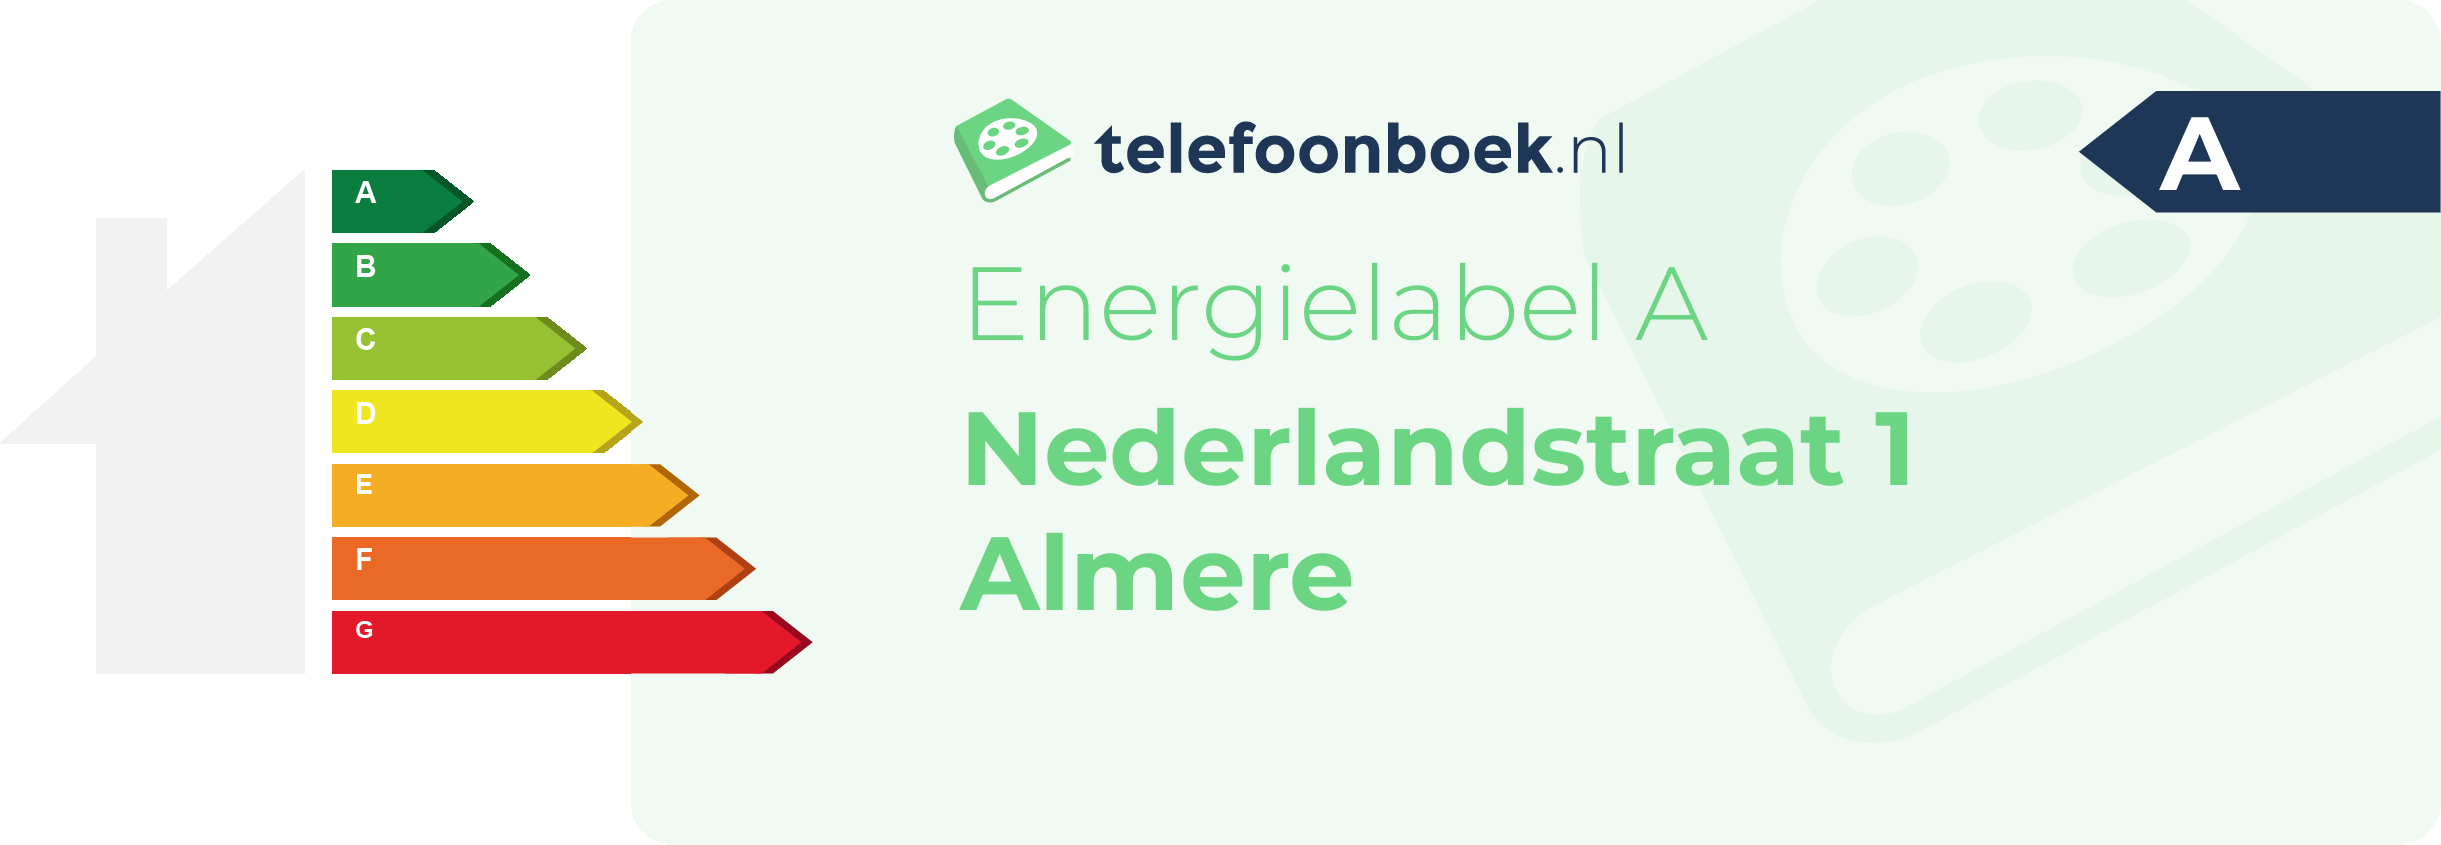 Energielabel Nederlandstraat 1 Almere